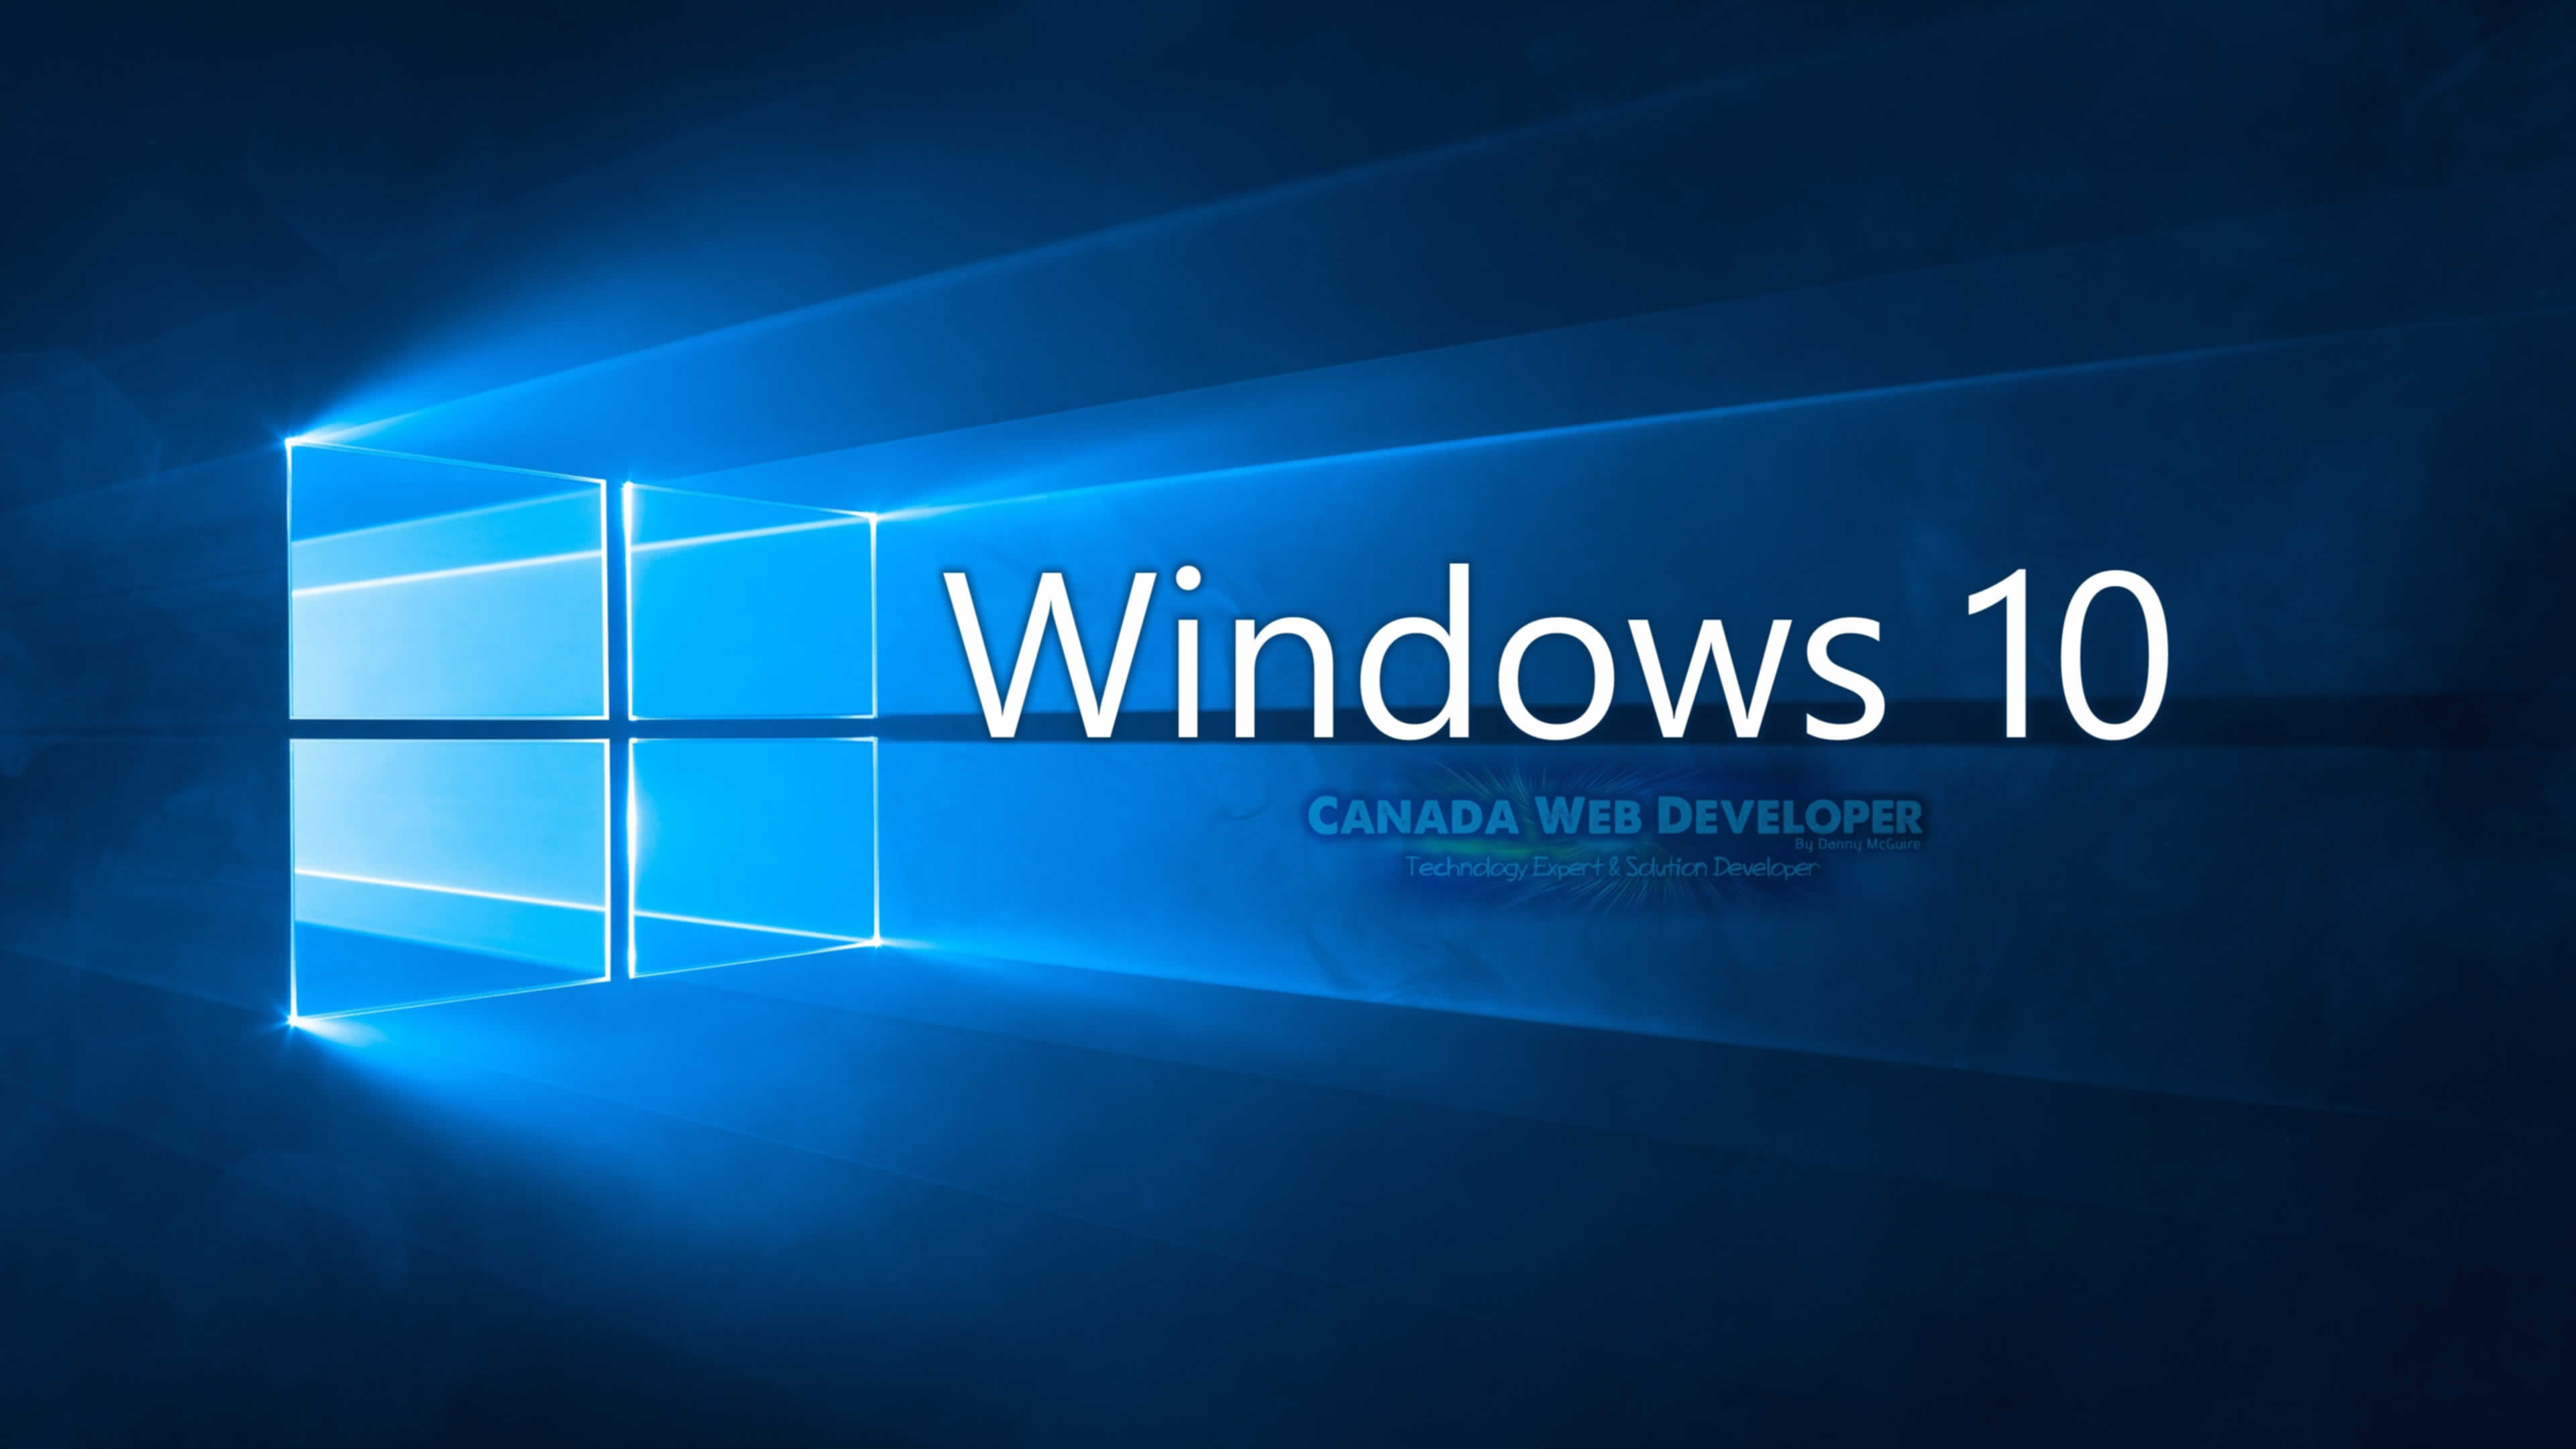 windows 10 pro image free download